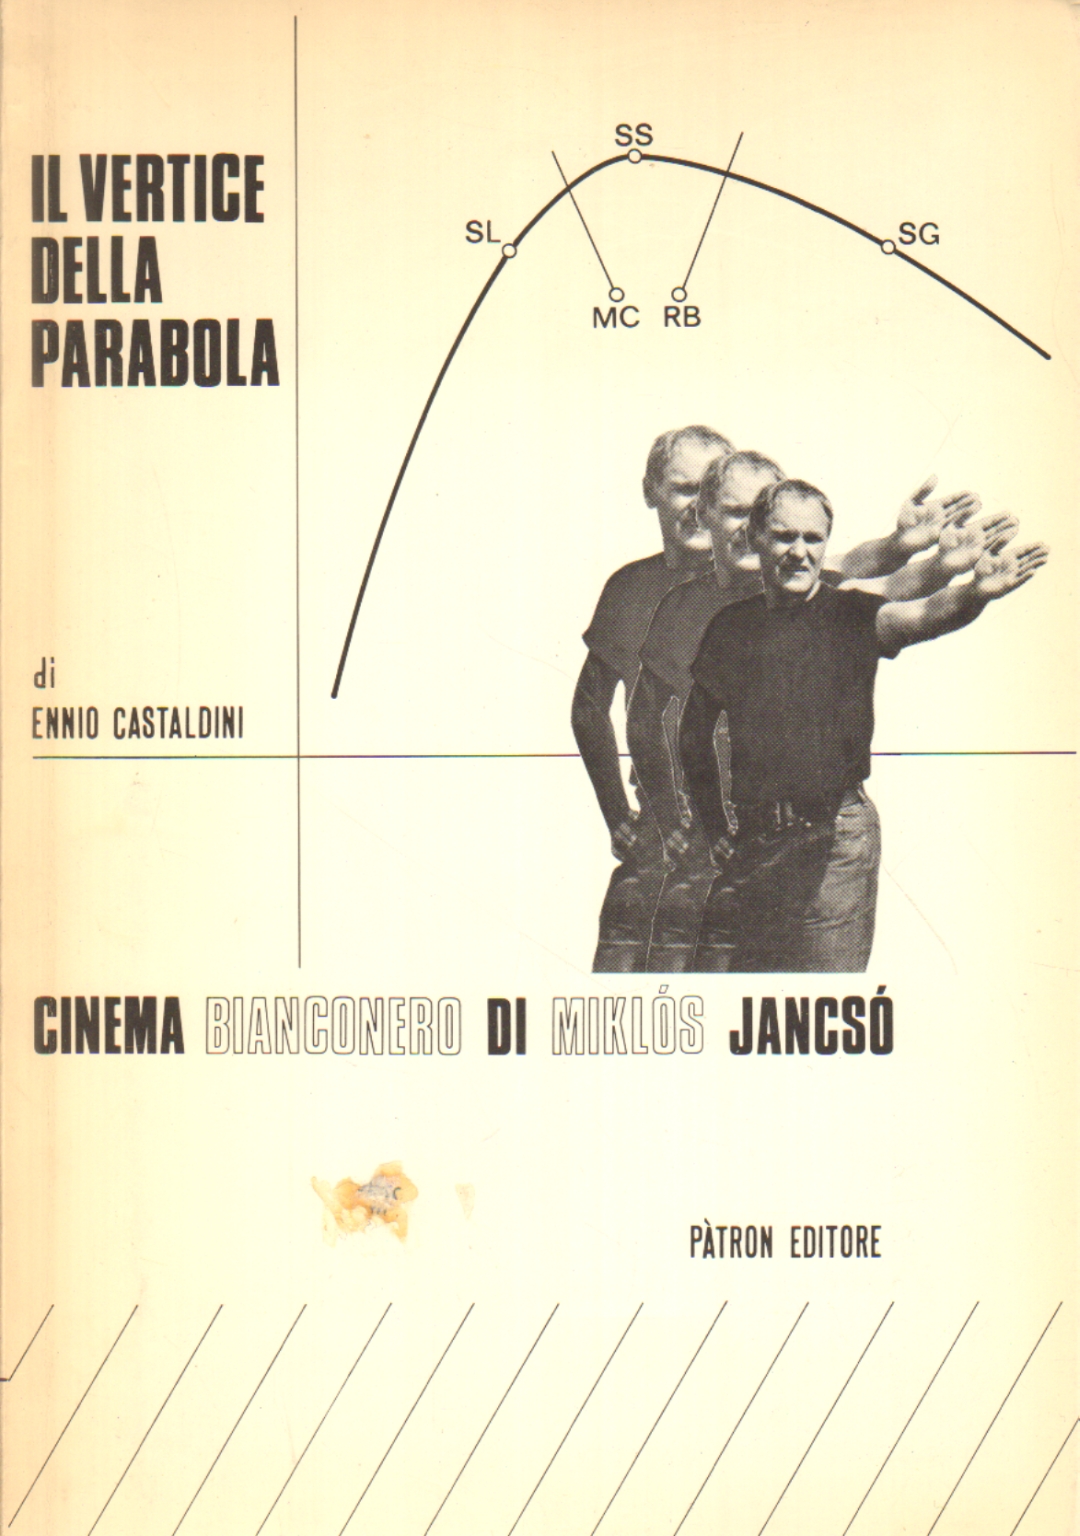 Il vertice della parabola, Ennio Castaldini